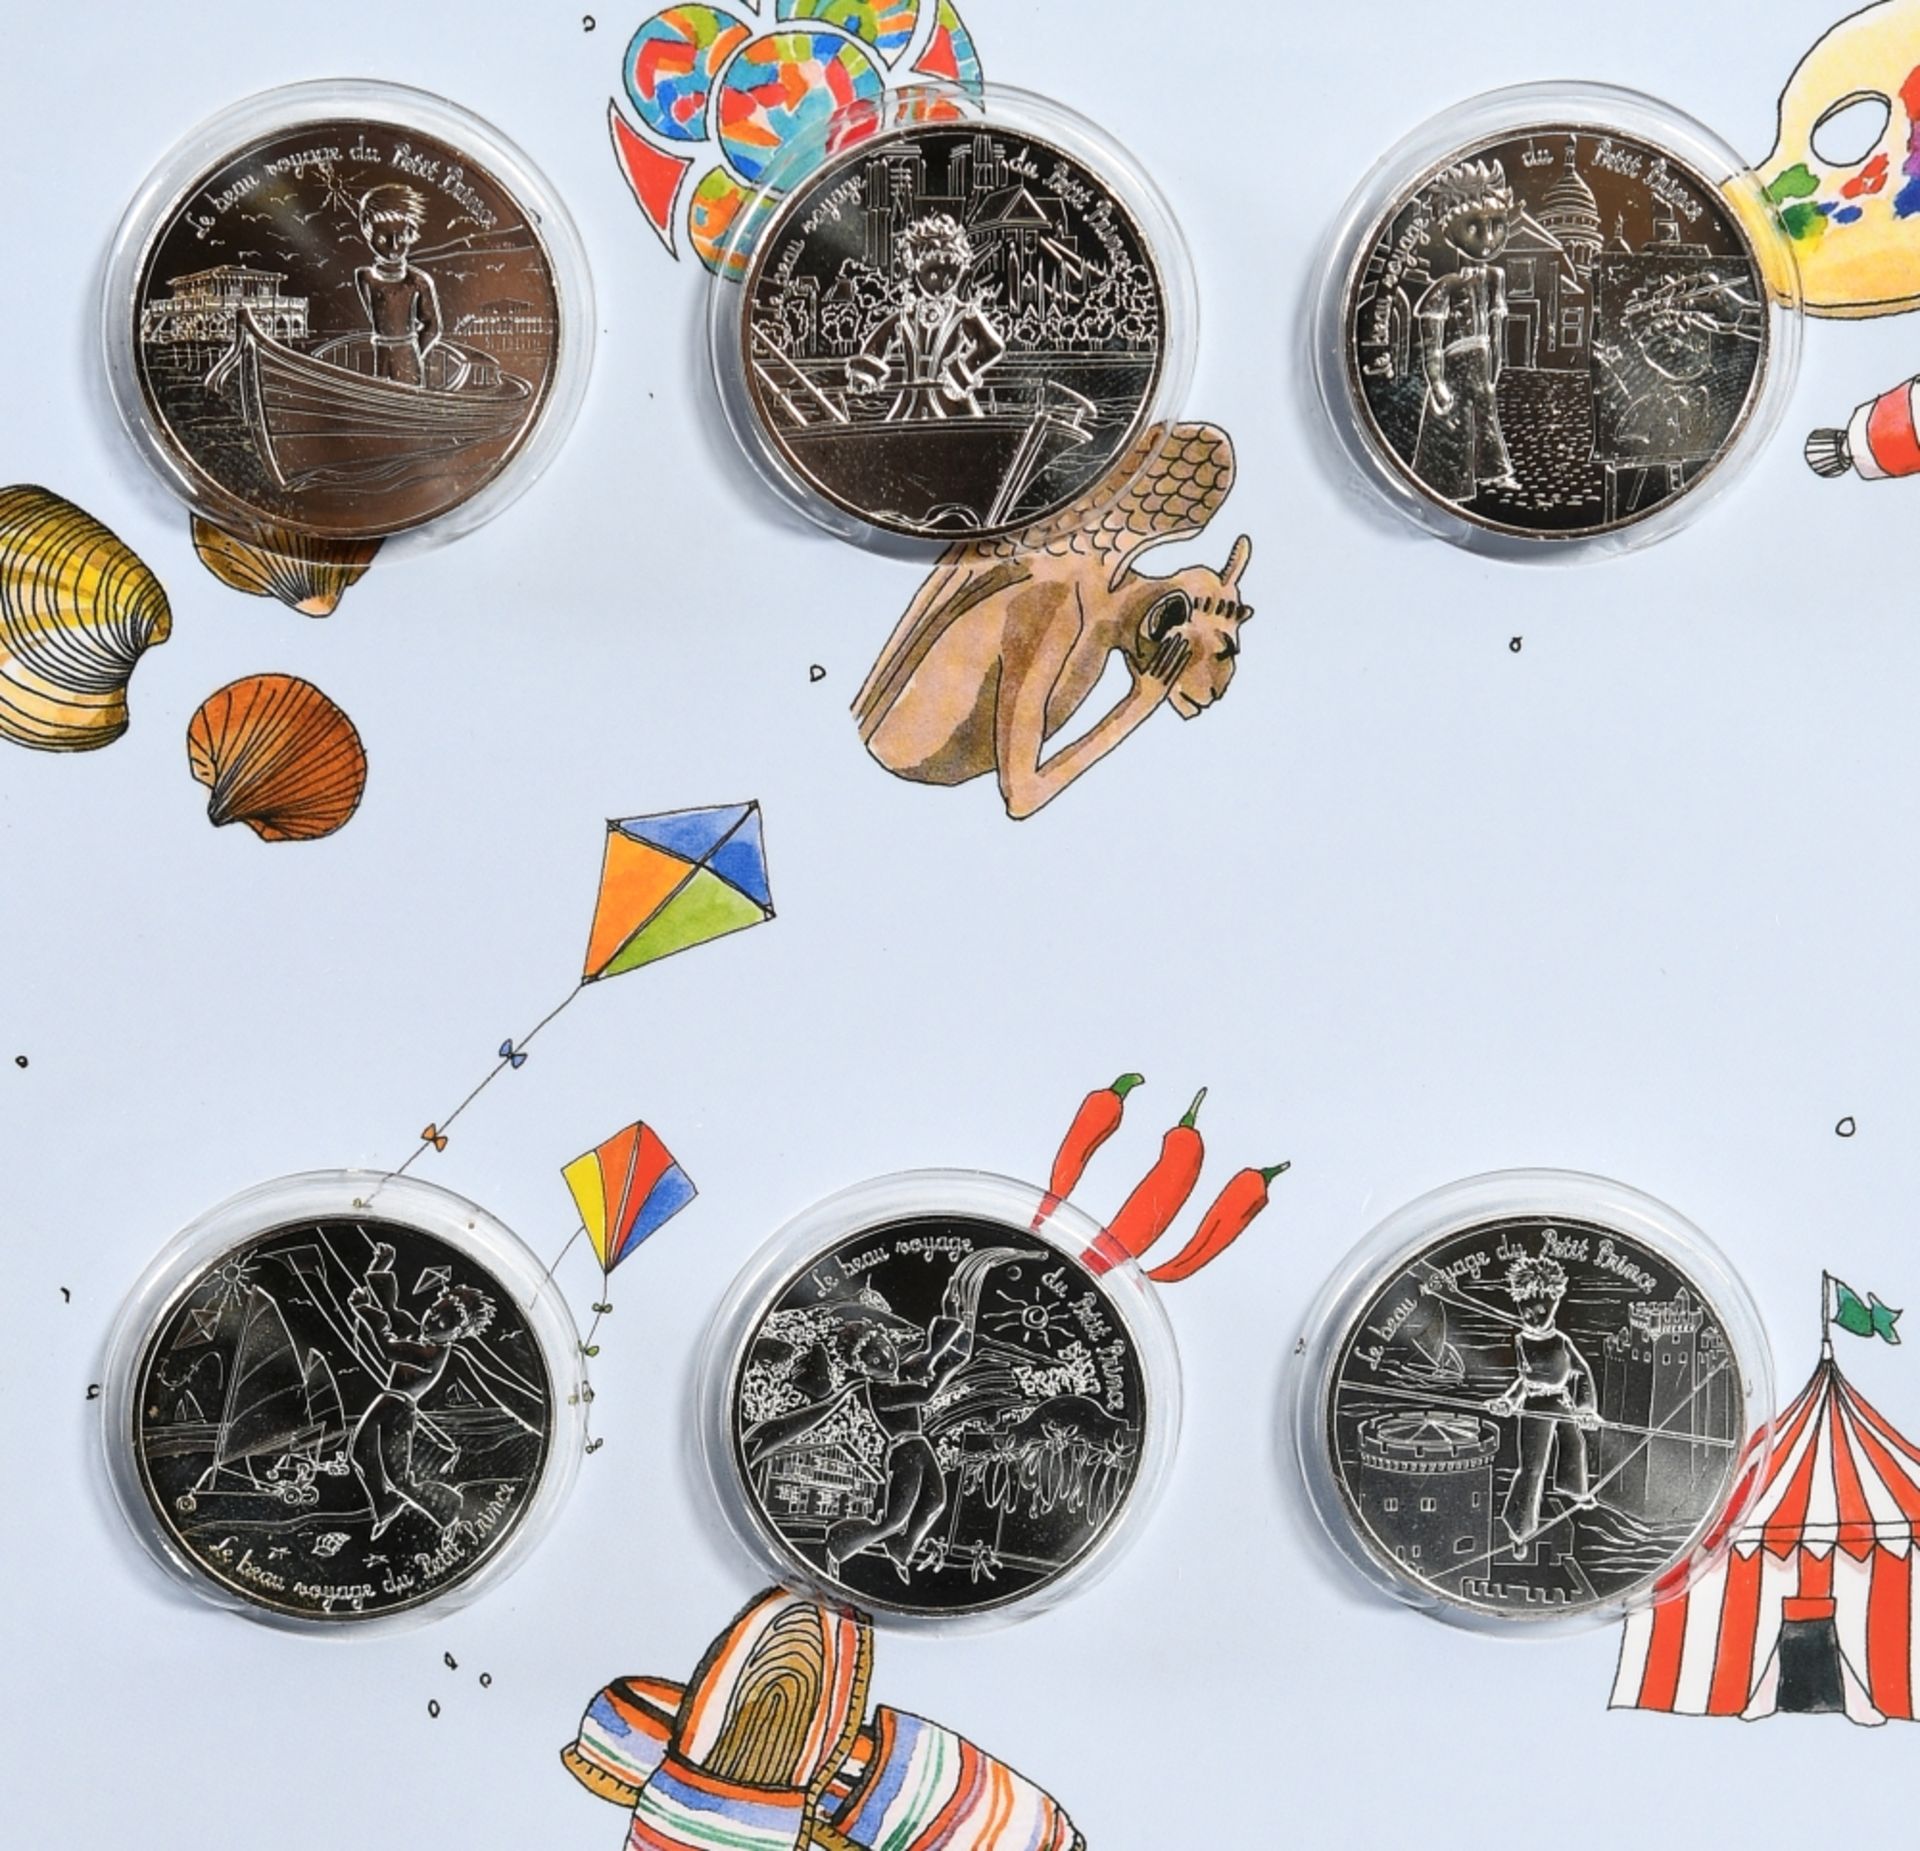 Münzen, 27 Stück - Gold- und Silbermünzen "Le Petit Prince" - Bild 2 aus 7